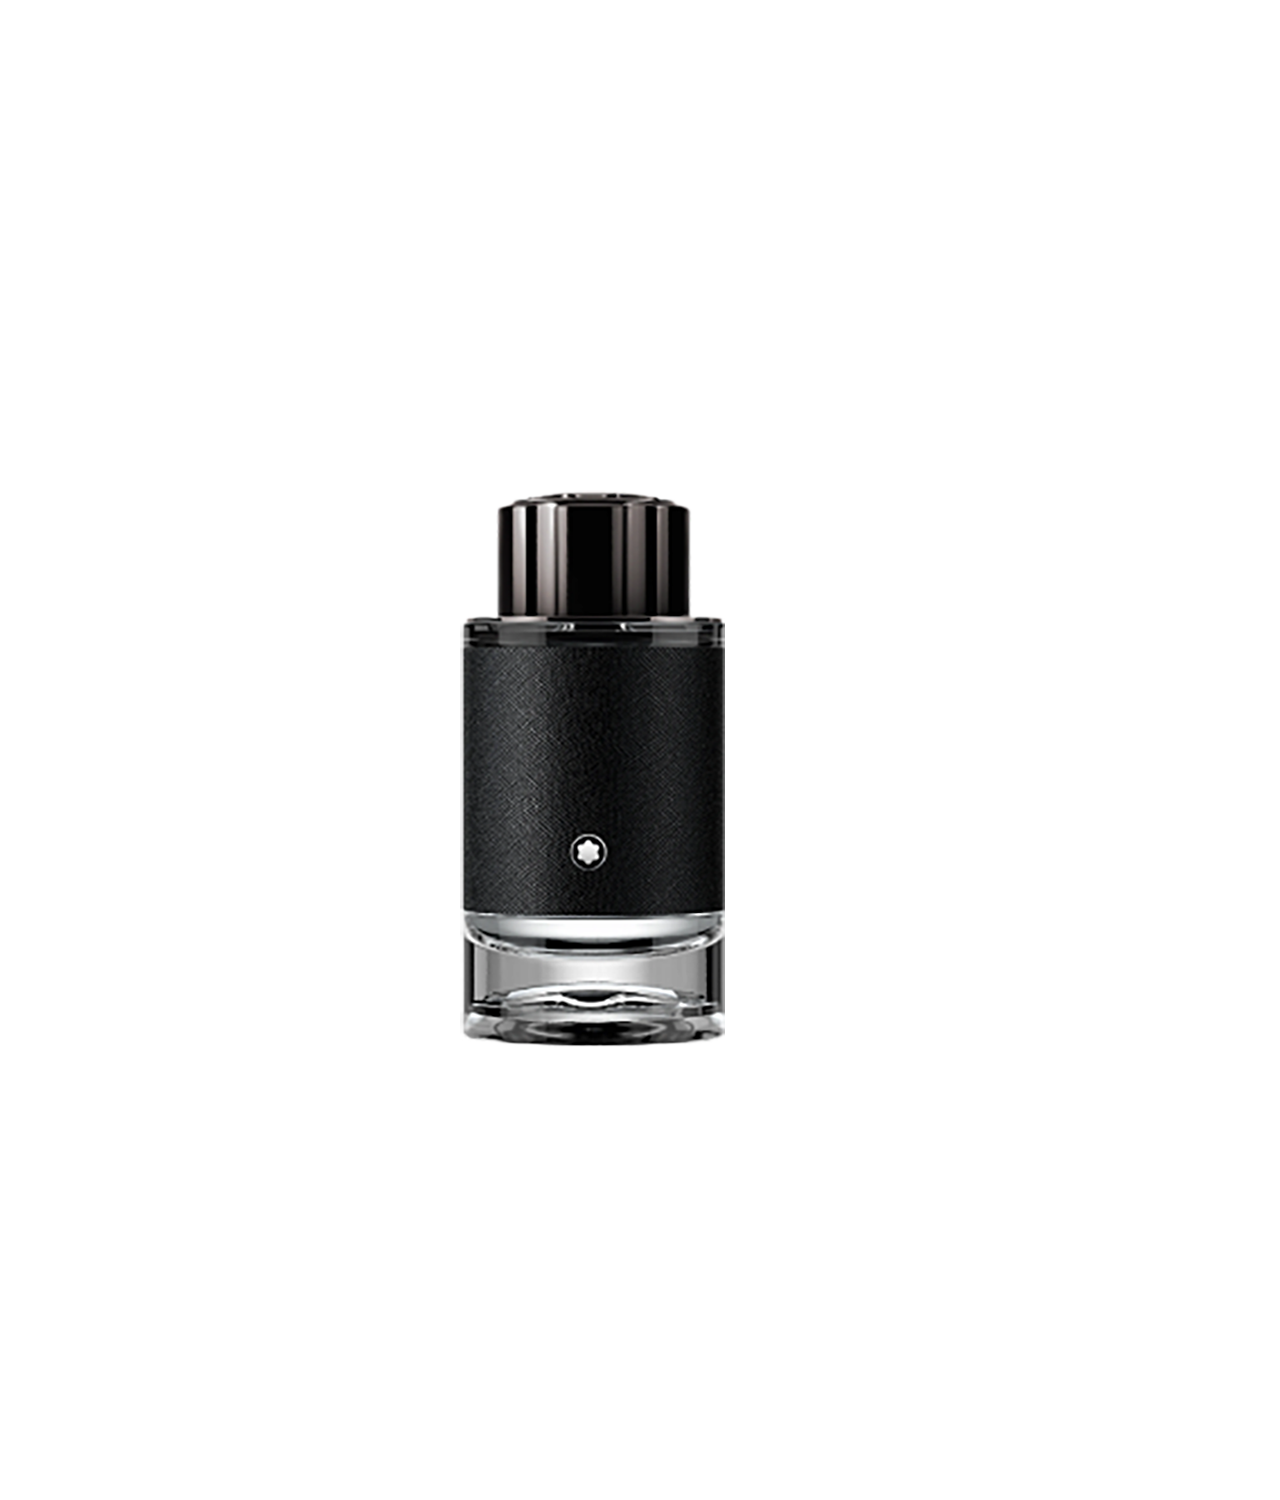 MONTBLANC Explorer Eau de Parfum; $104